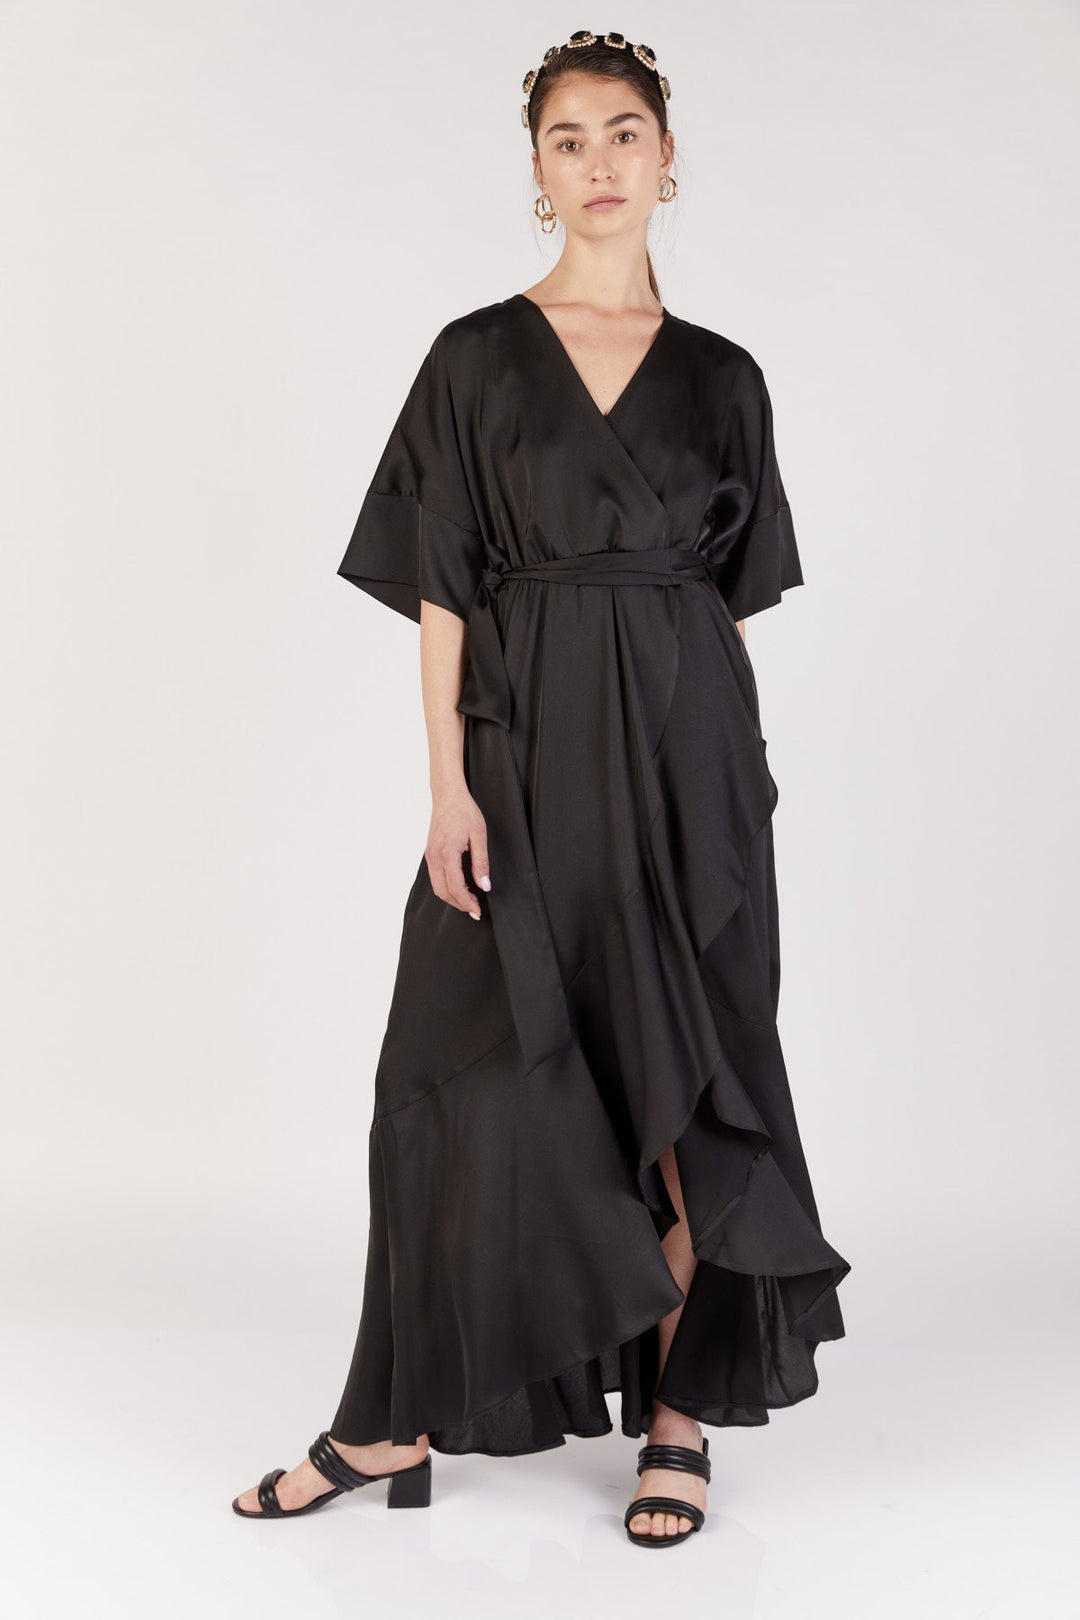 שמלת מעטפת נולה בצבע שחור - Dana Sidi